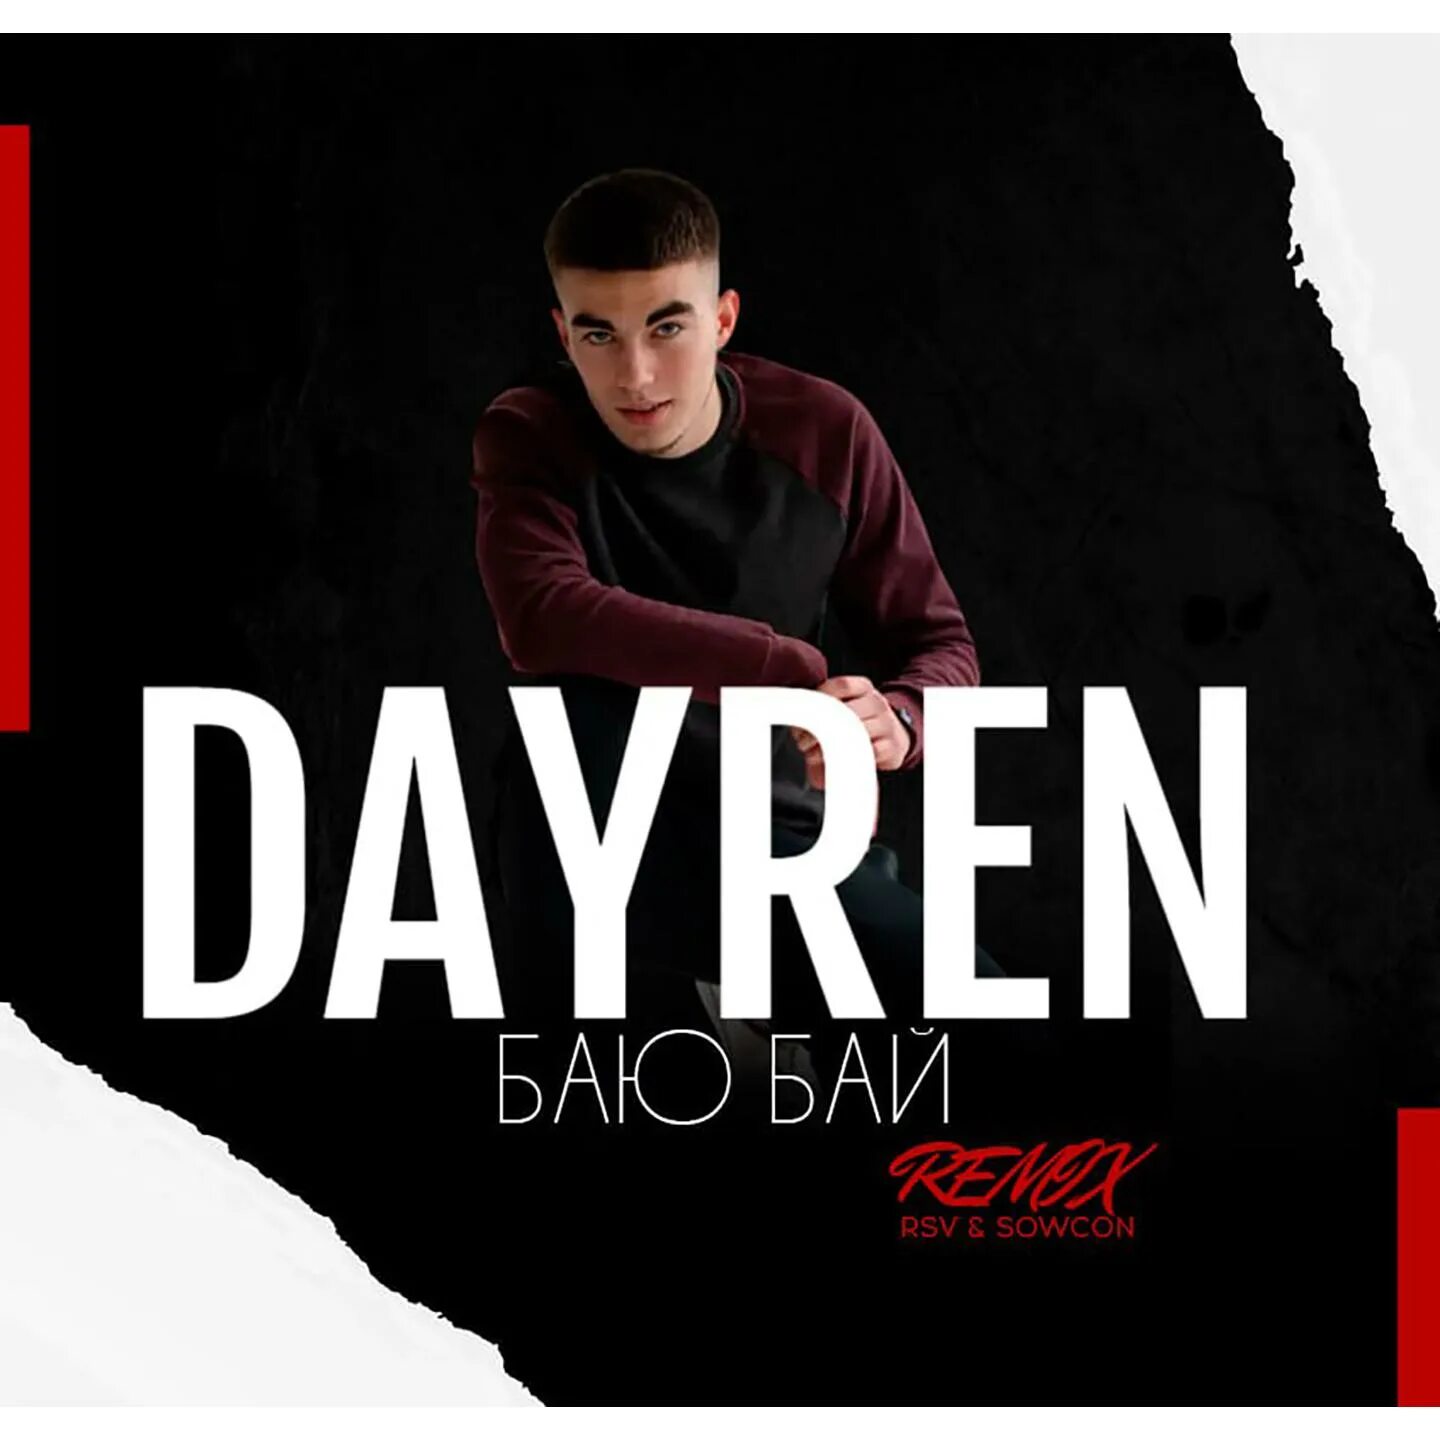 Ремикс бай. Dayren. Dayren фото. Бай бай ремикс. Dayren баю баю обложка.